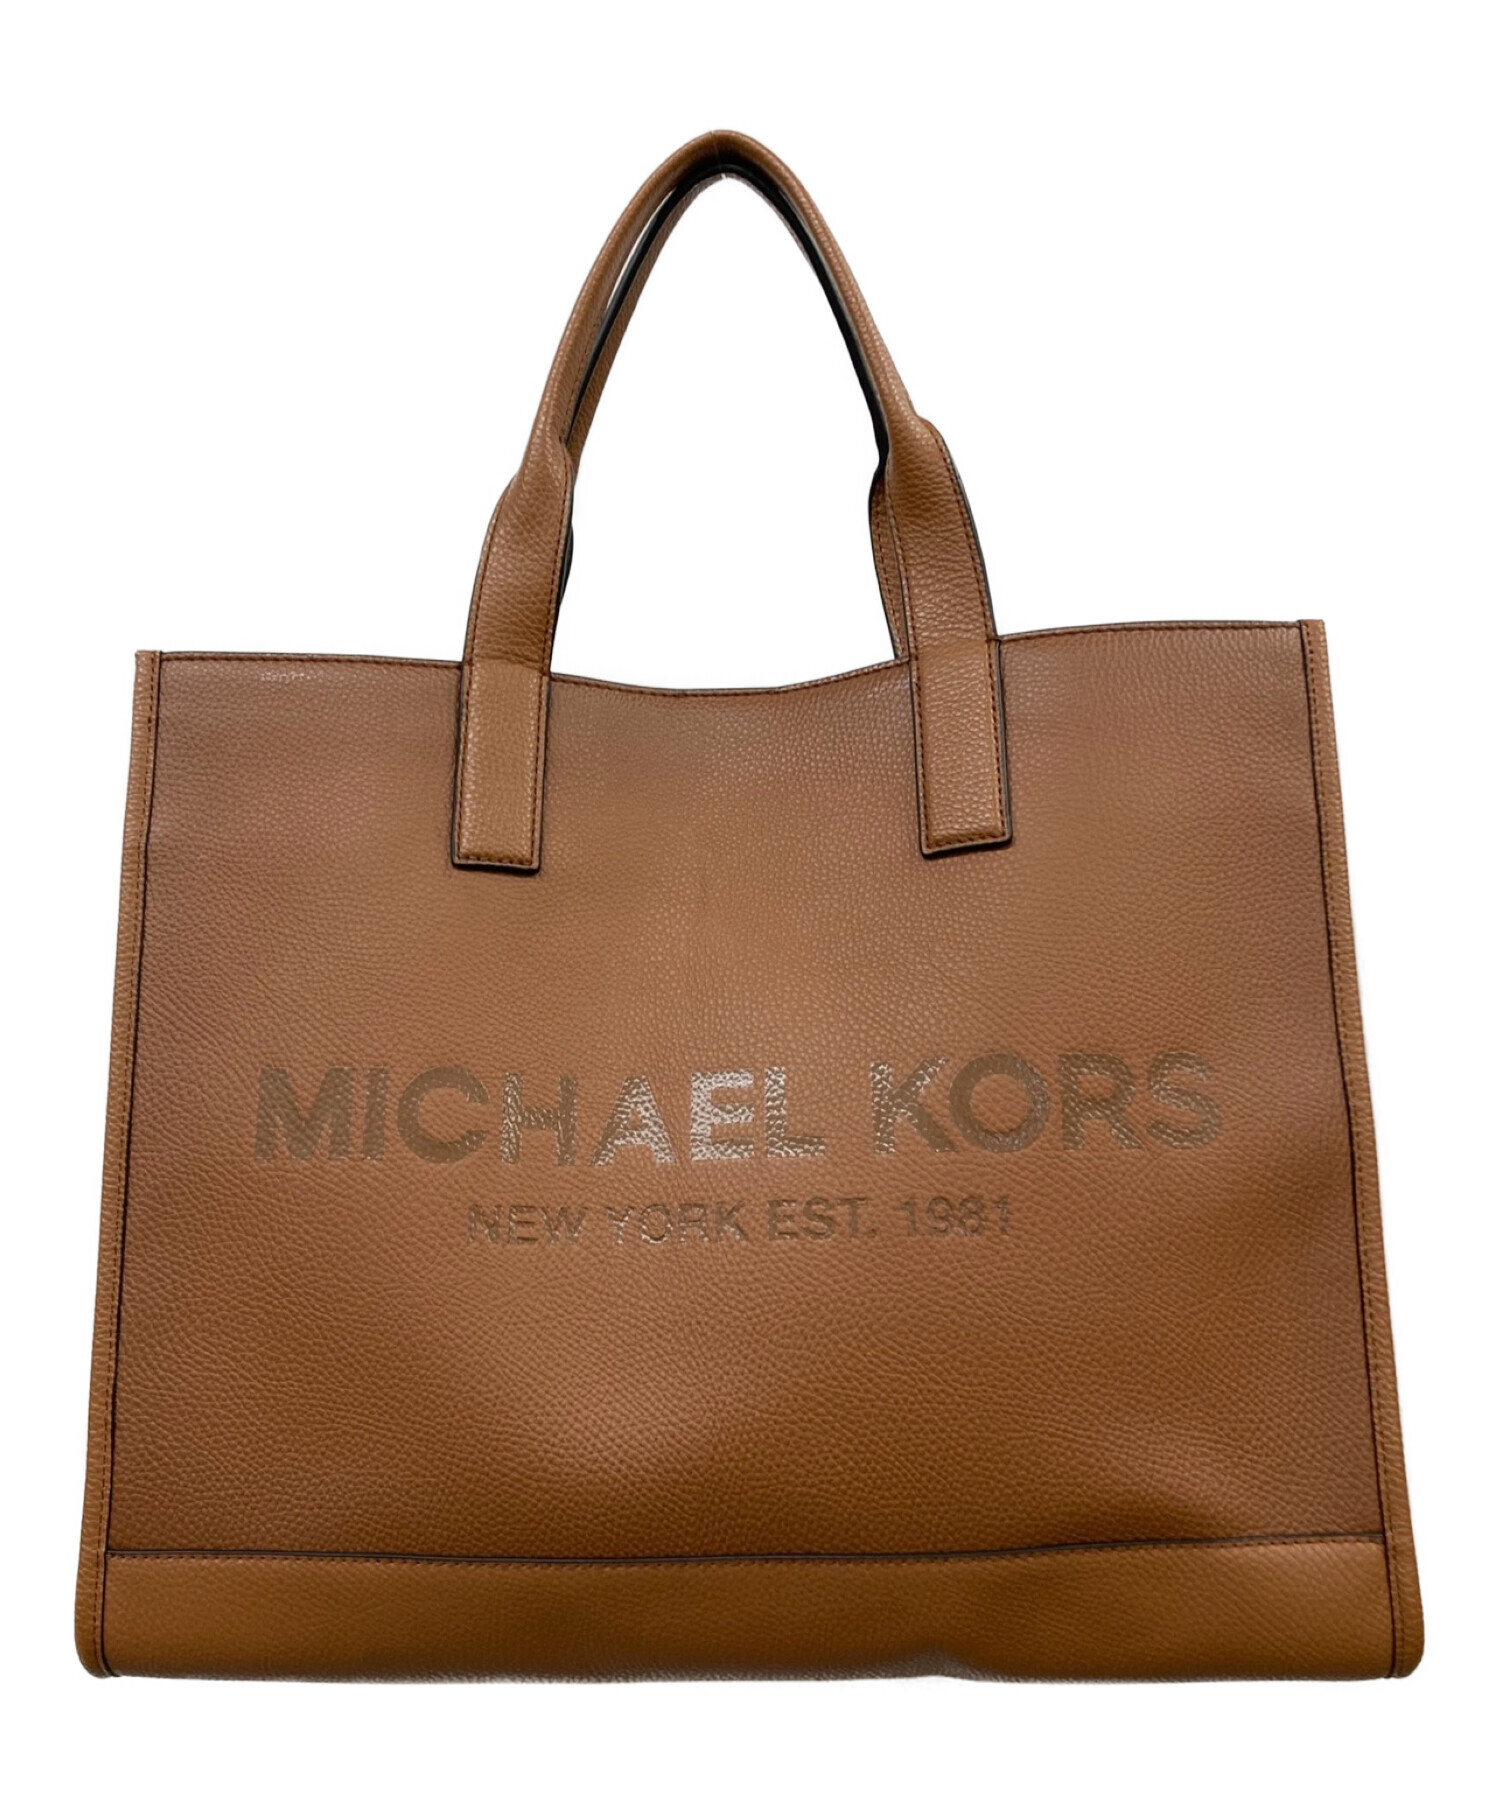 8,190円Michael Kors Structured Bag